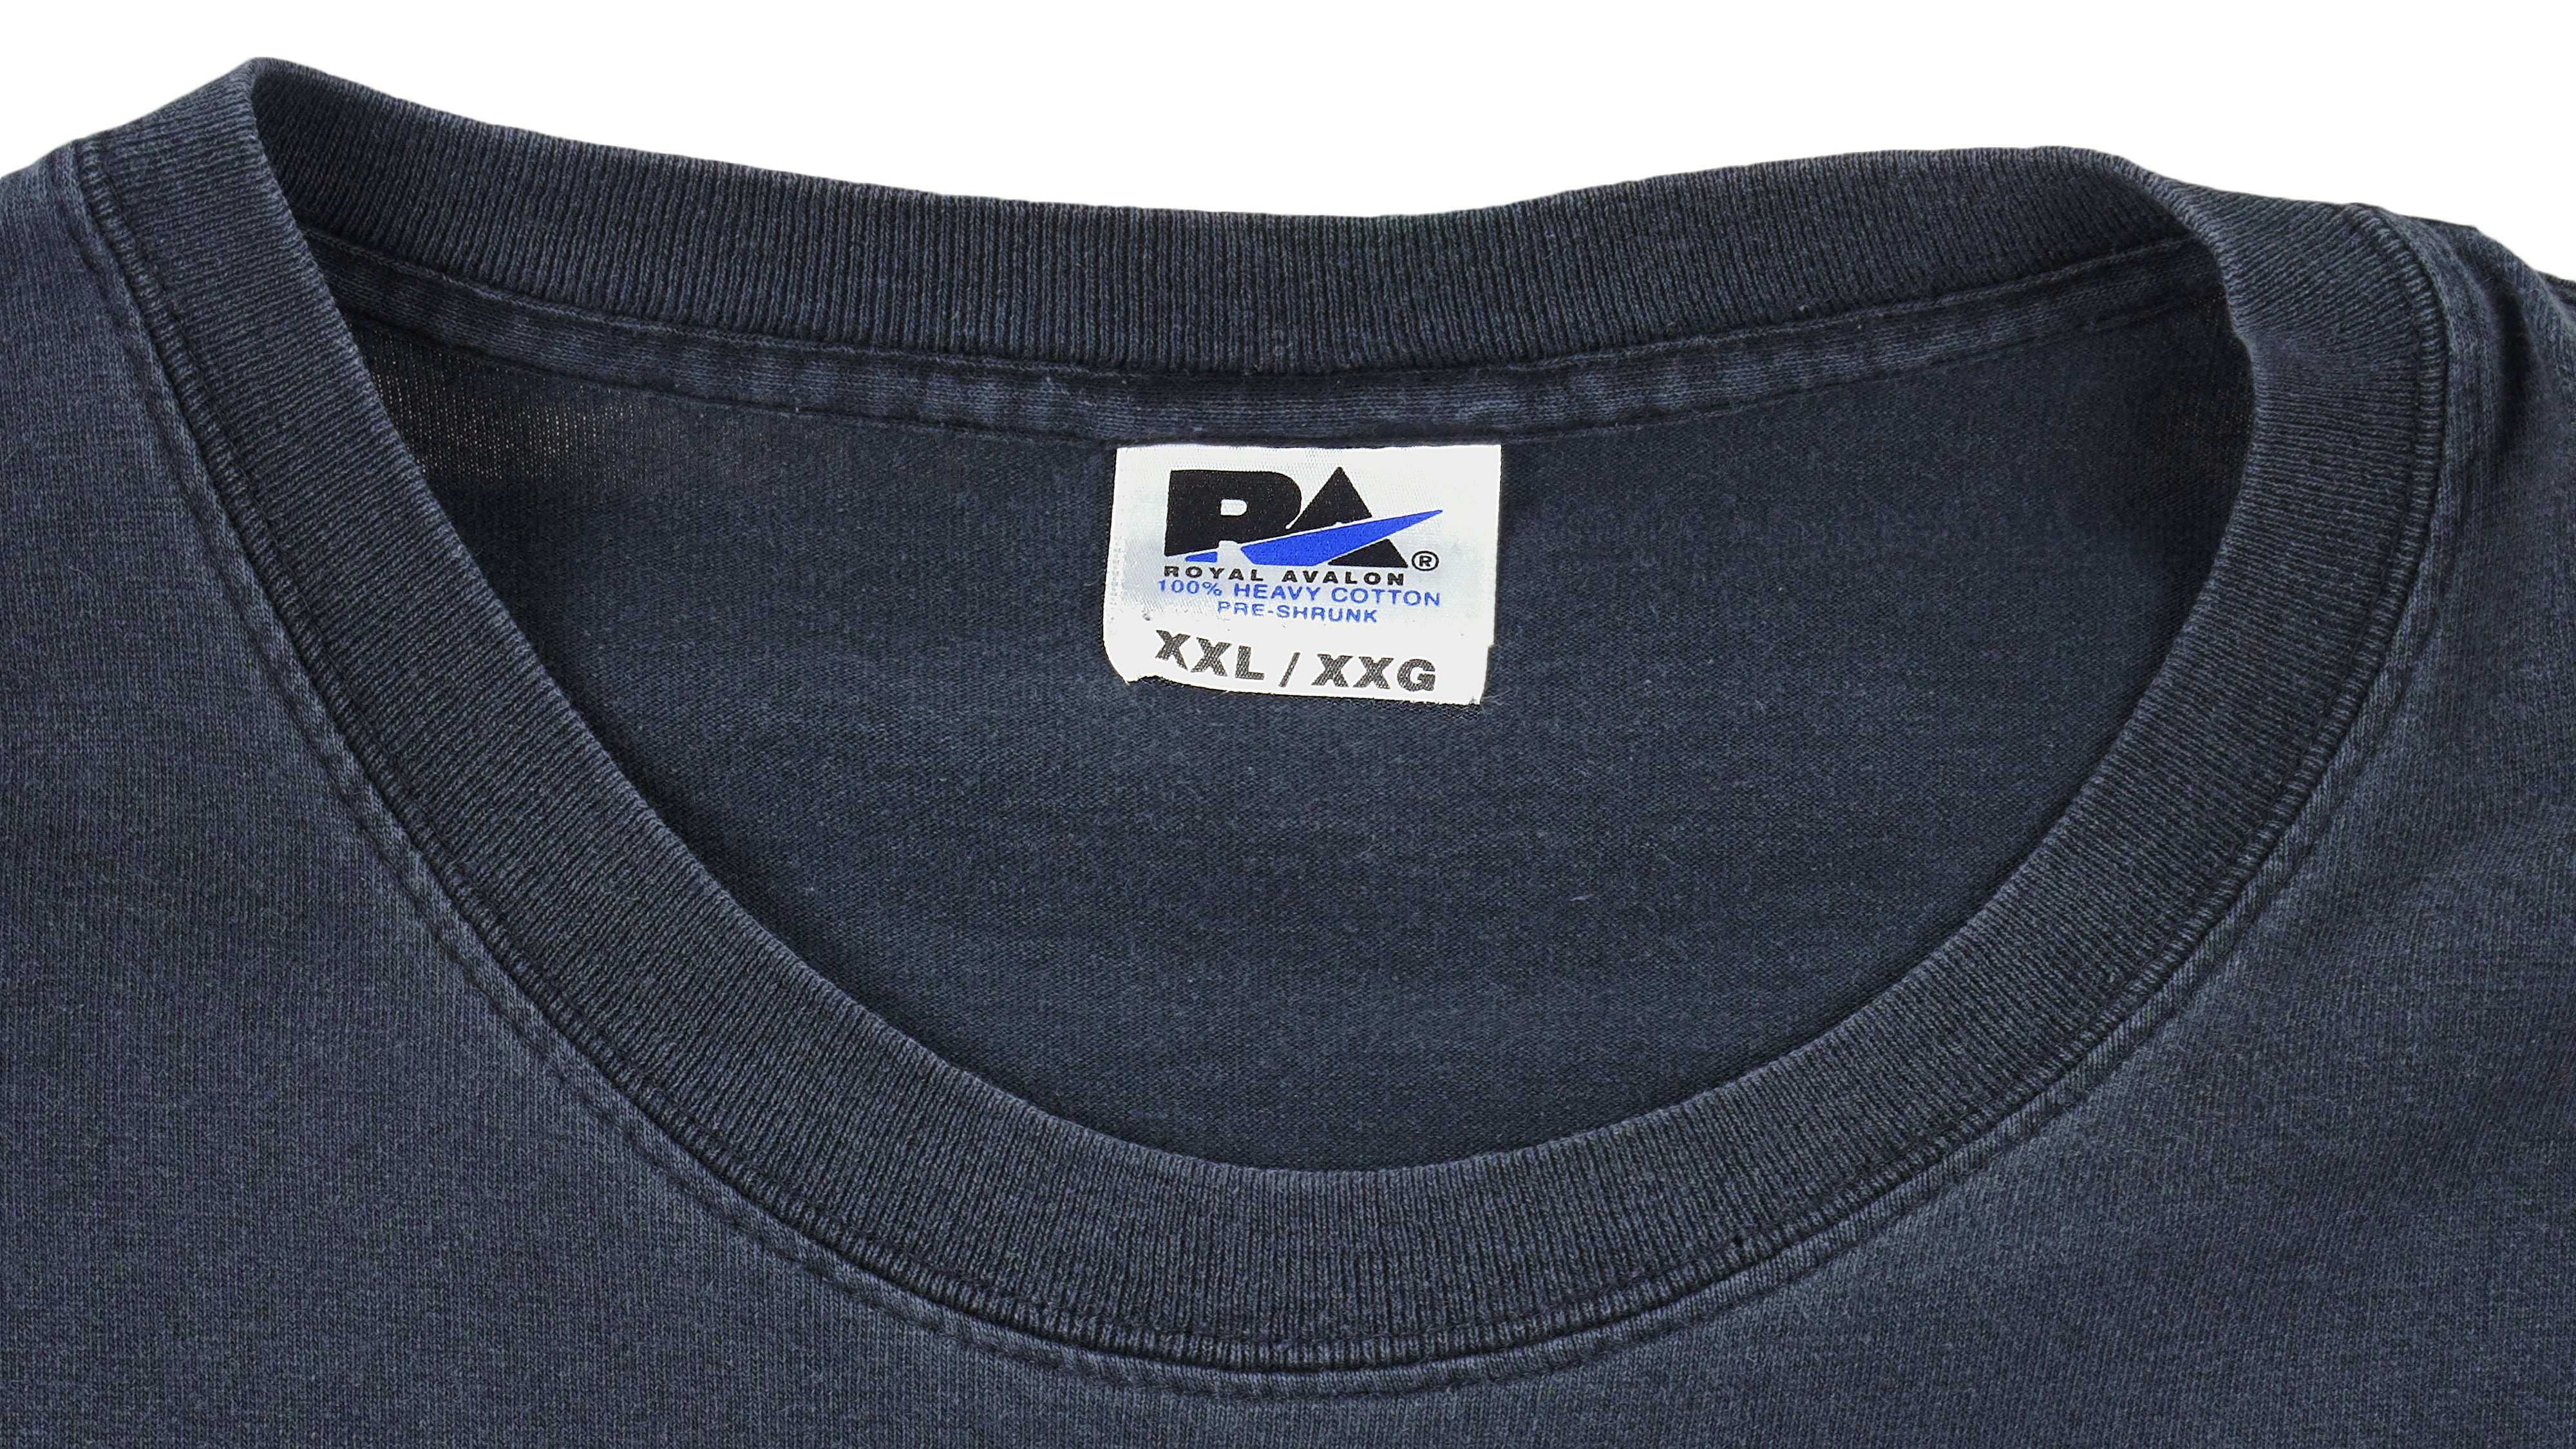 Vintage Logo 7 Blue KC Royals Thick Cotton T-Shirt Unisex Adult Size XL